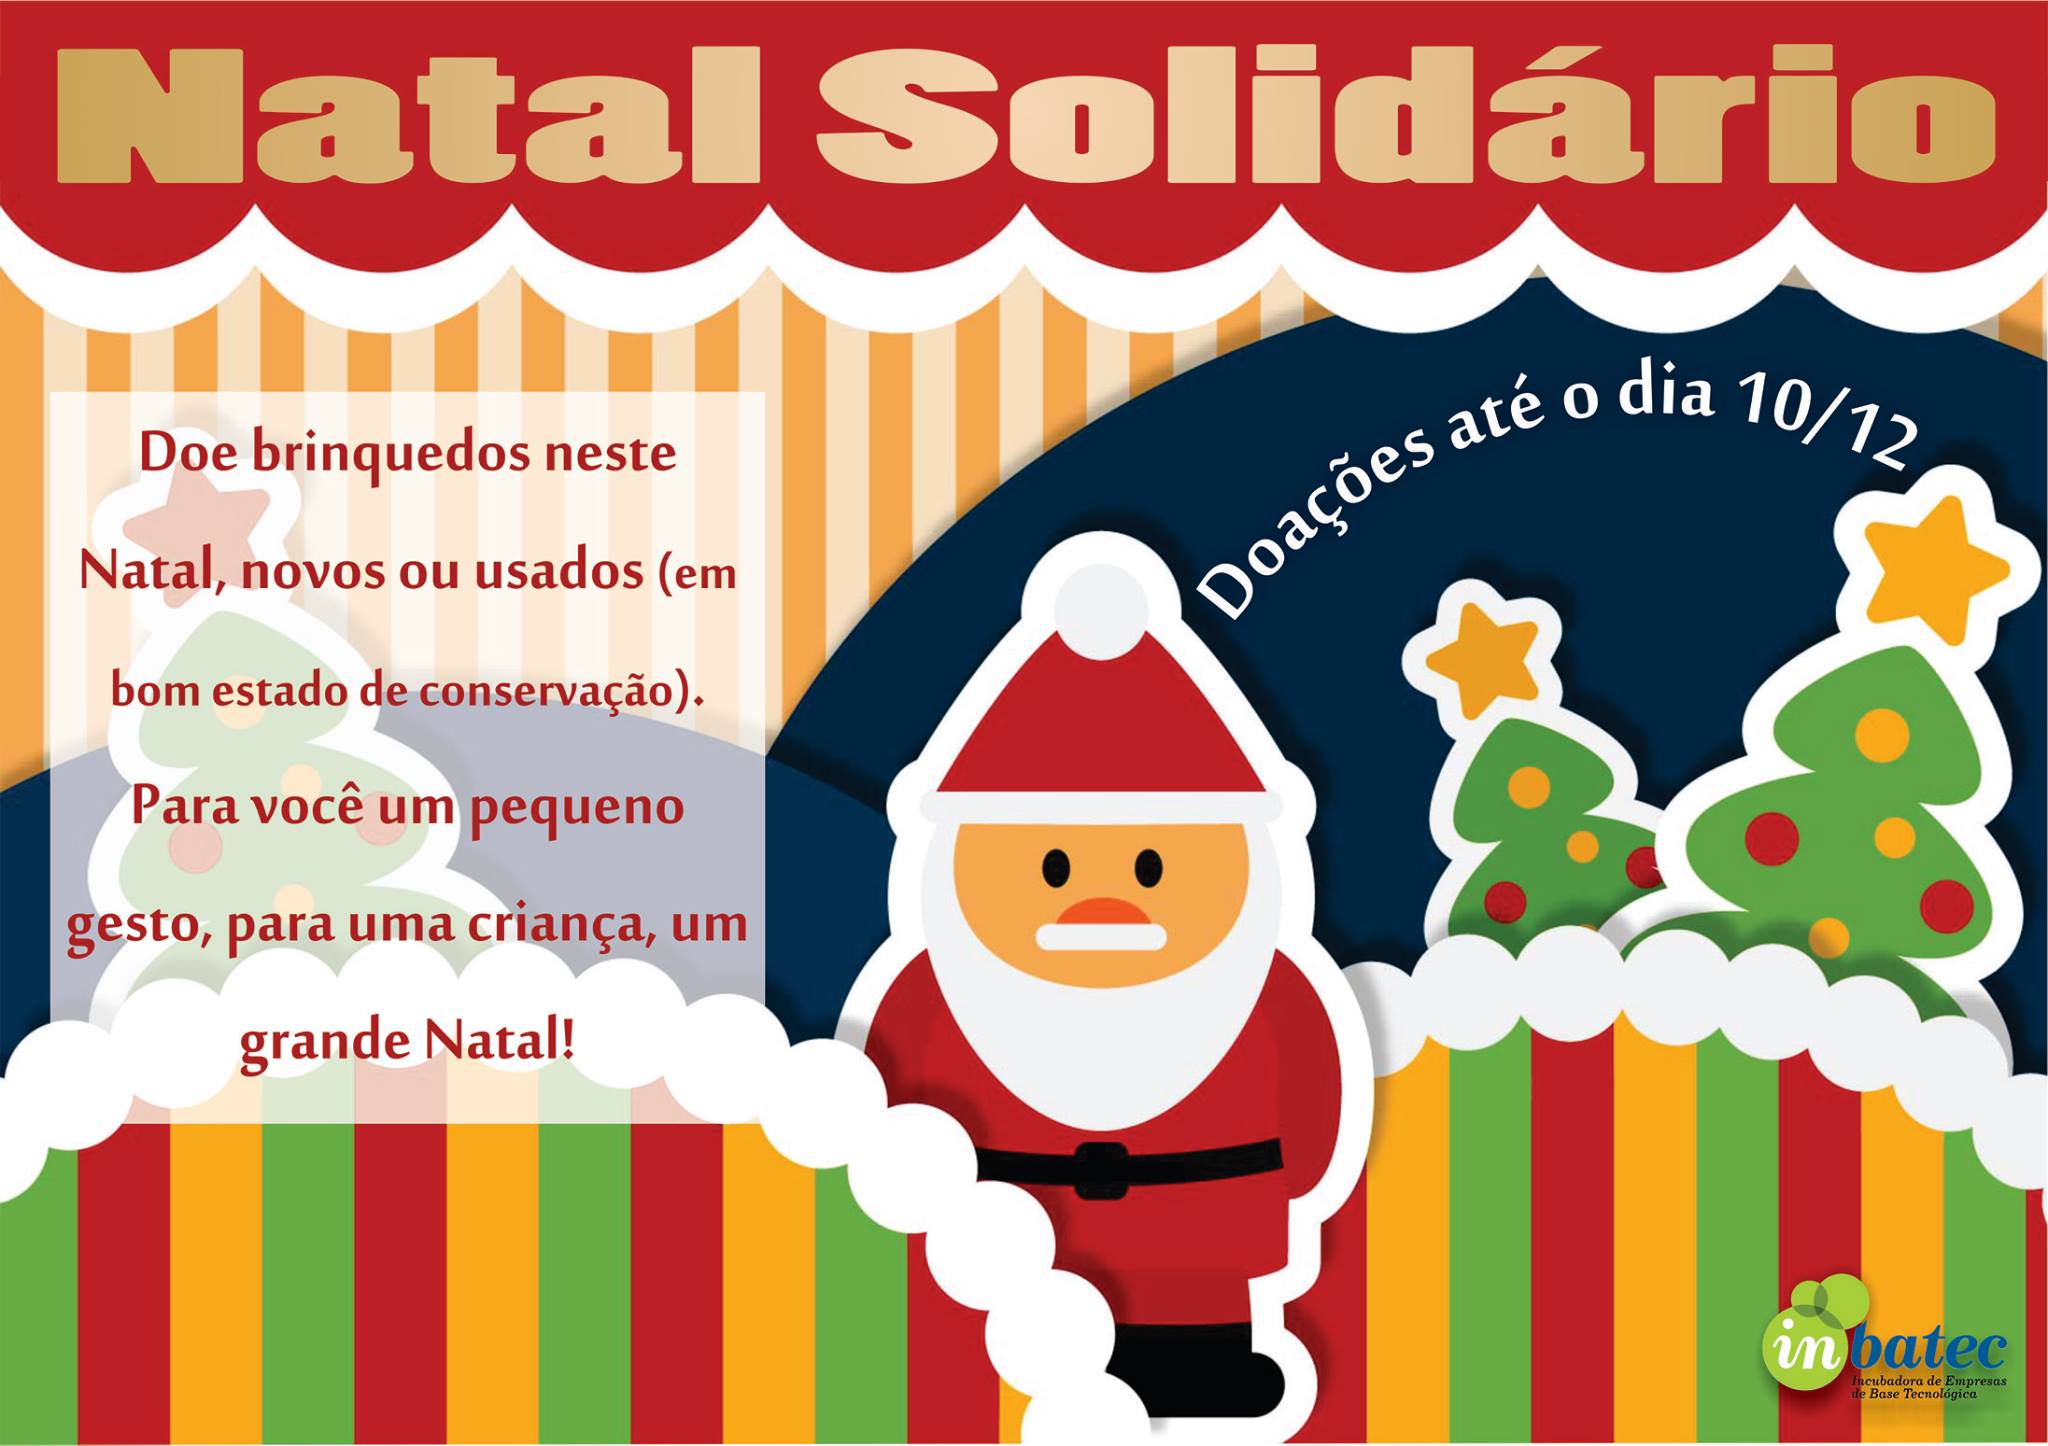 Inbatec realiza campanha de doação de brinquedos para o Natal - UFLA -  Universidade Federal de Lavras